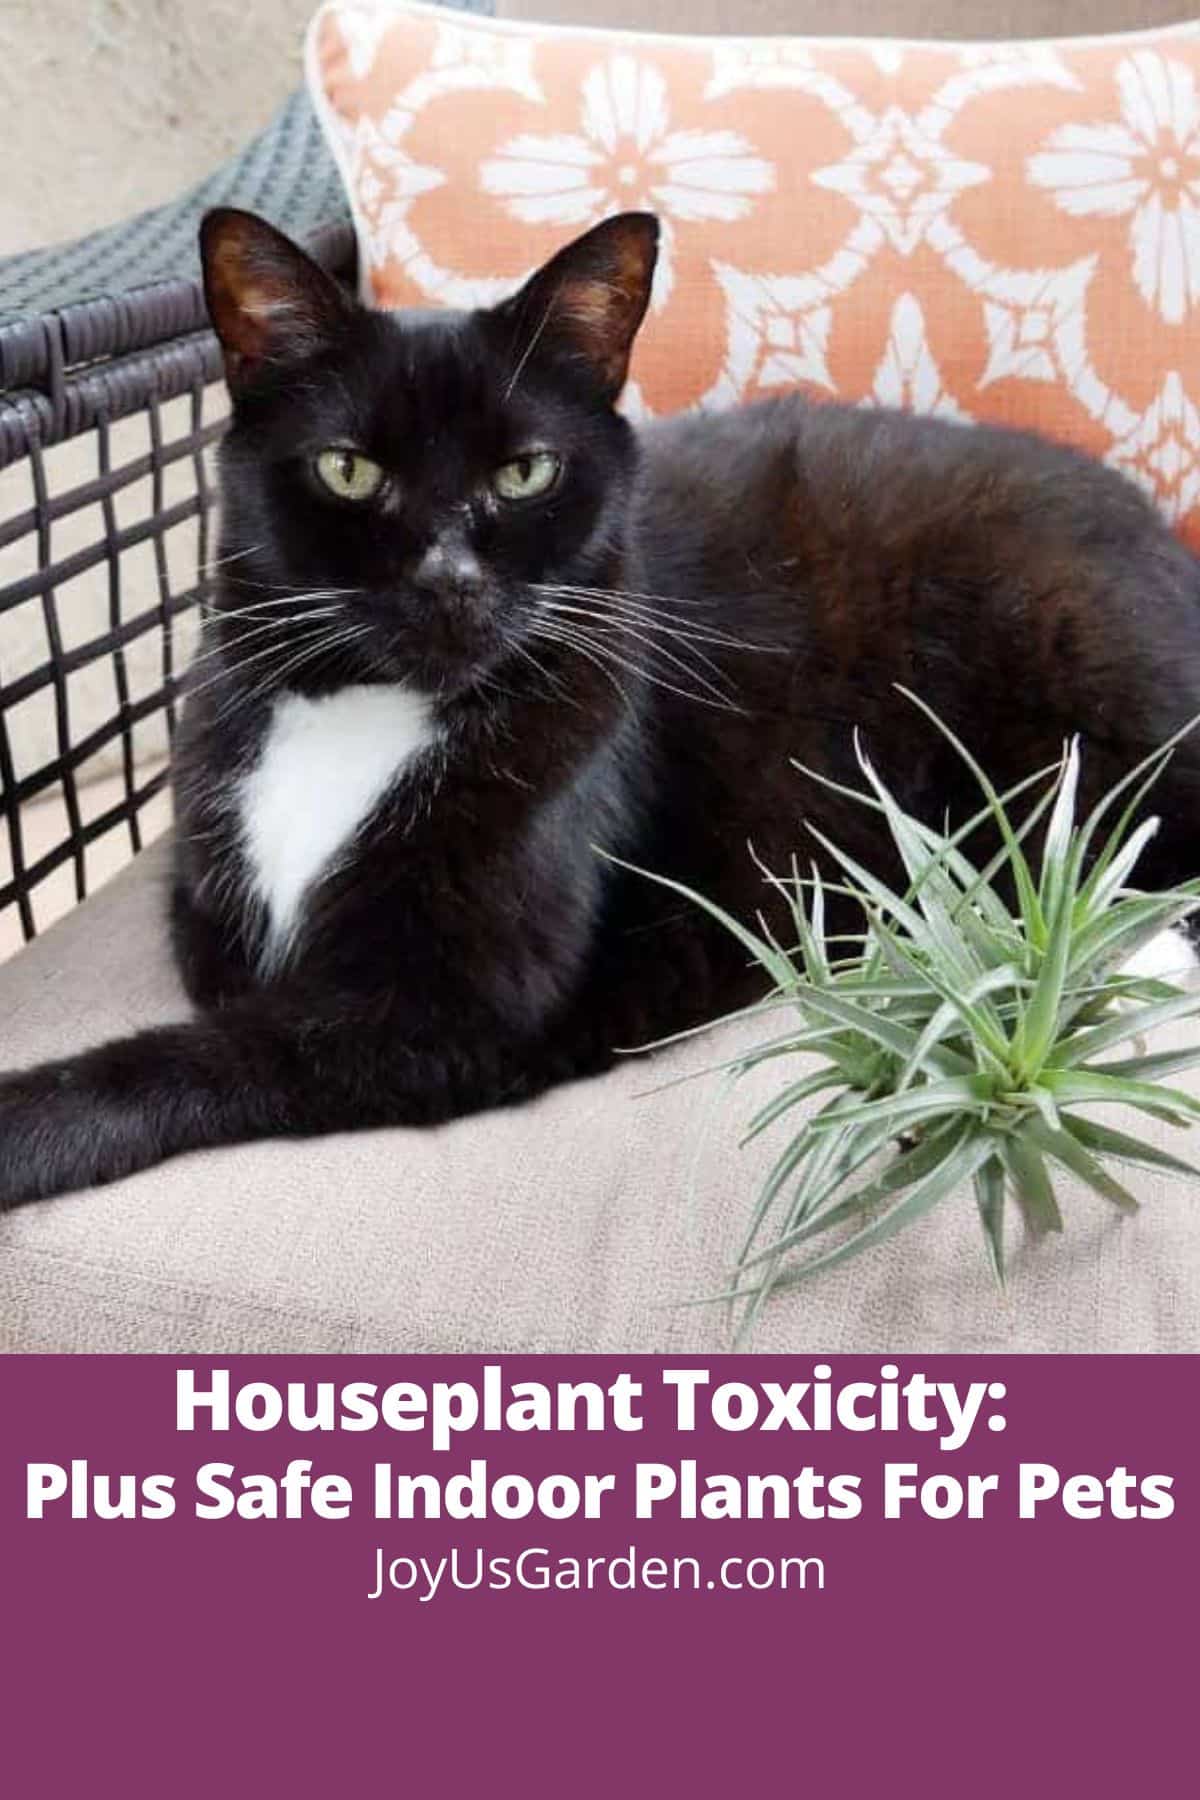  Toxicidade das plantas de interior: ademais de plantas de interior seguras para animais